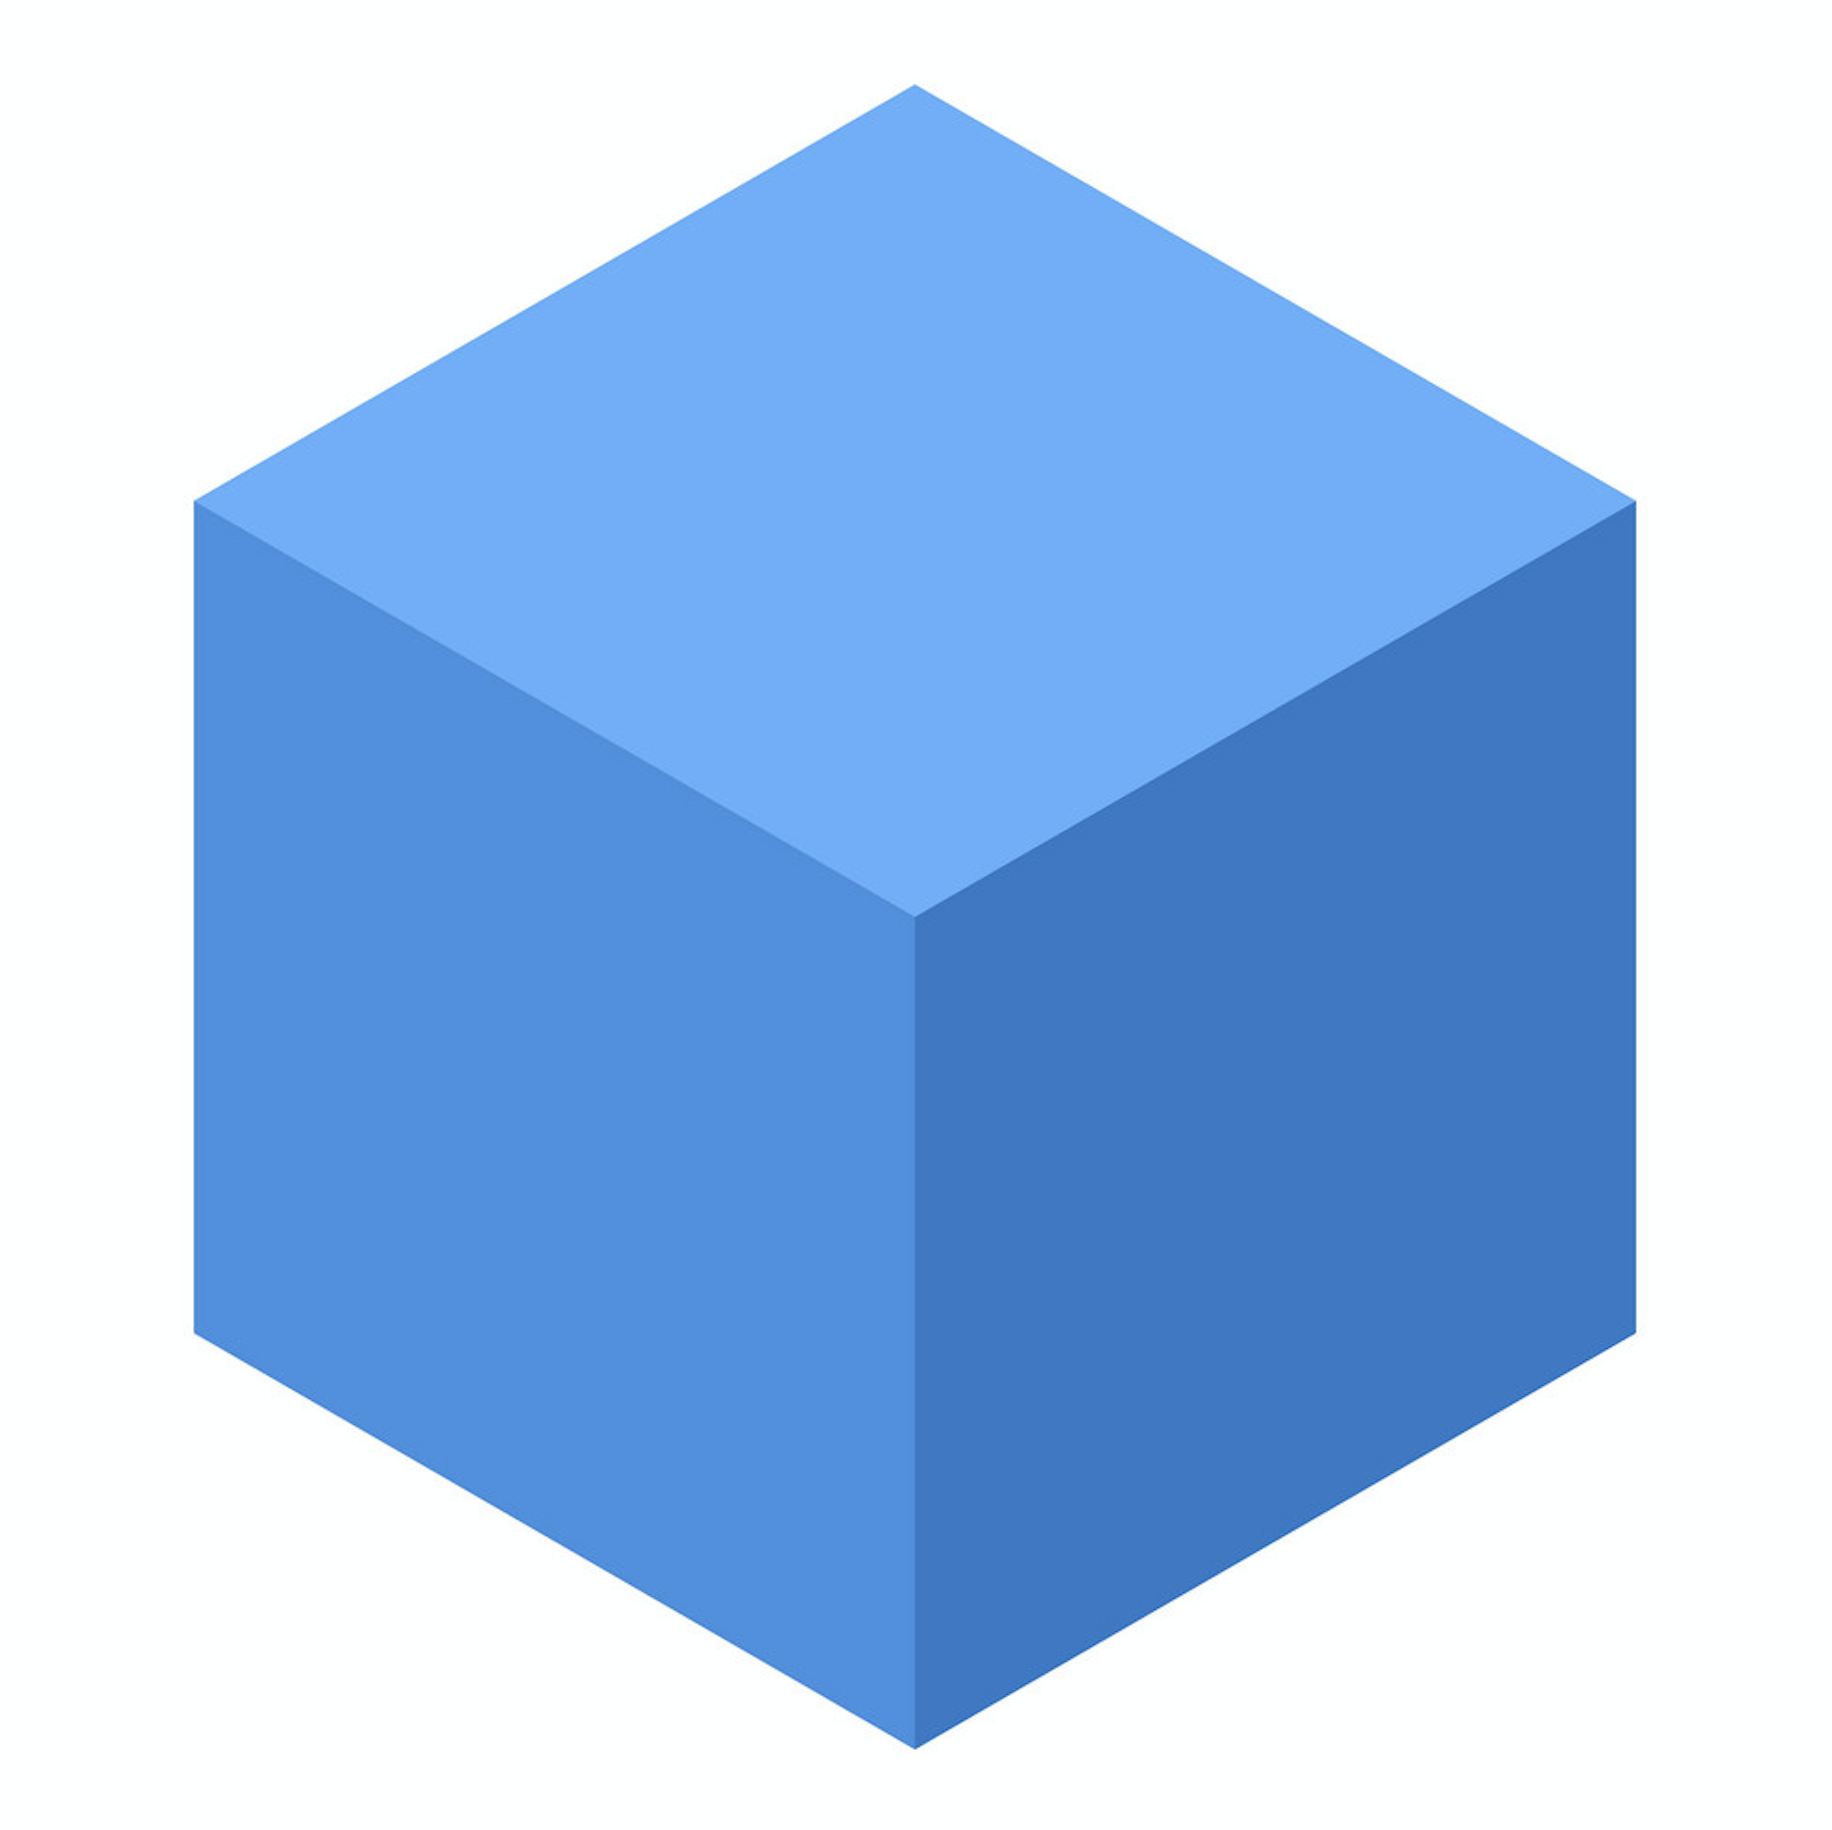 Blue cube. Голубой куб. Изометрический куб. Куб без фона. 3д куб на прозрачном фоне.